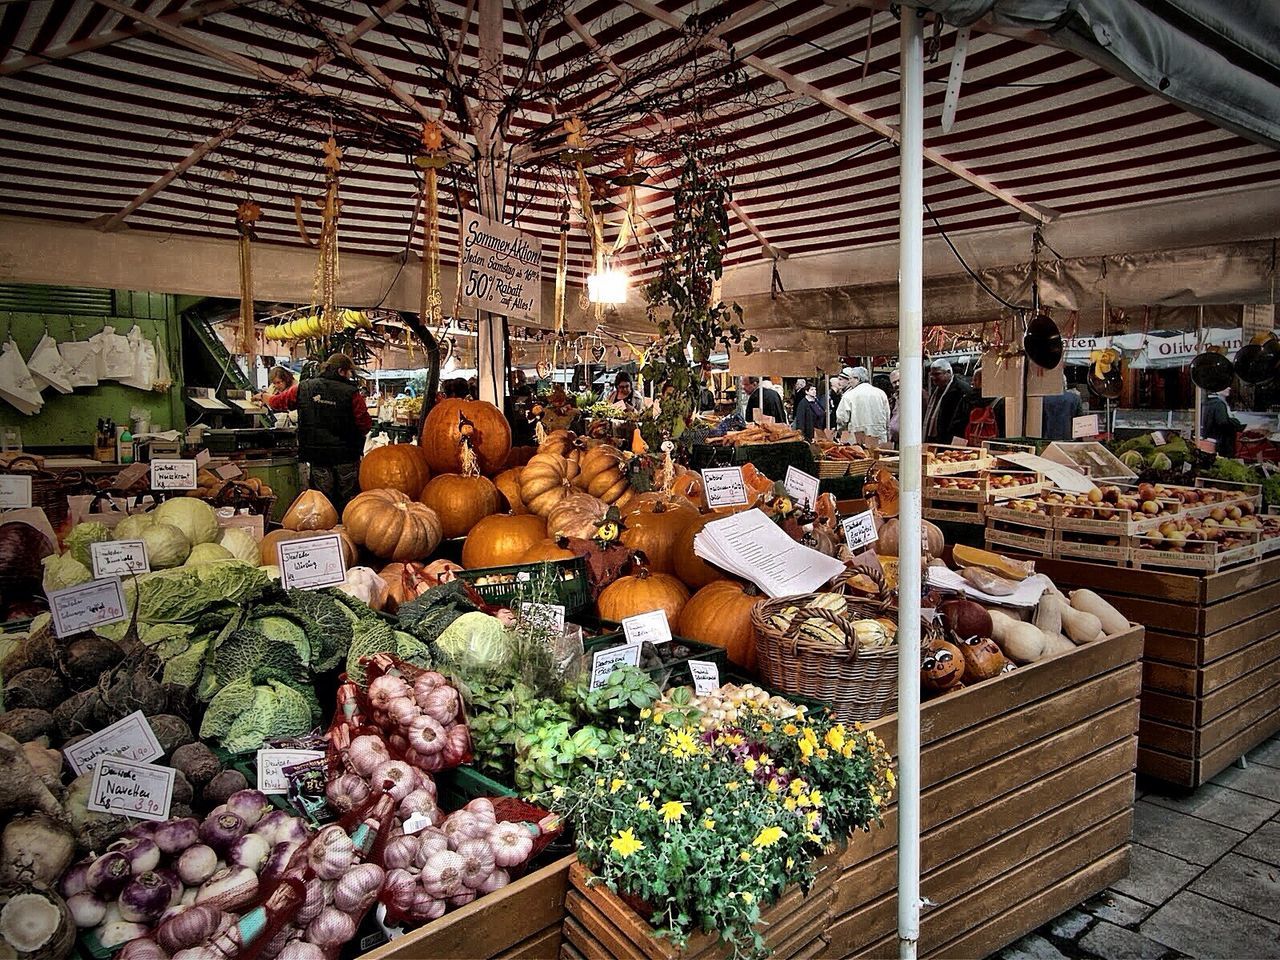 Vegetables displayed at market stalls